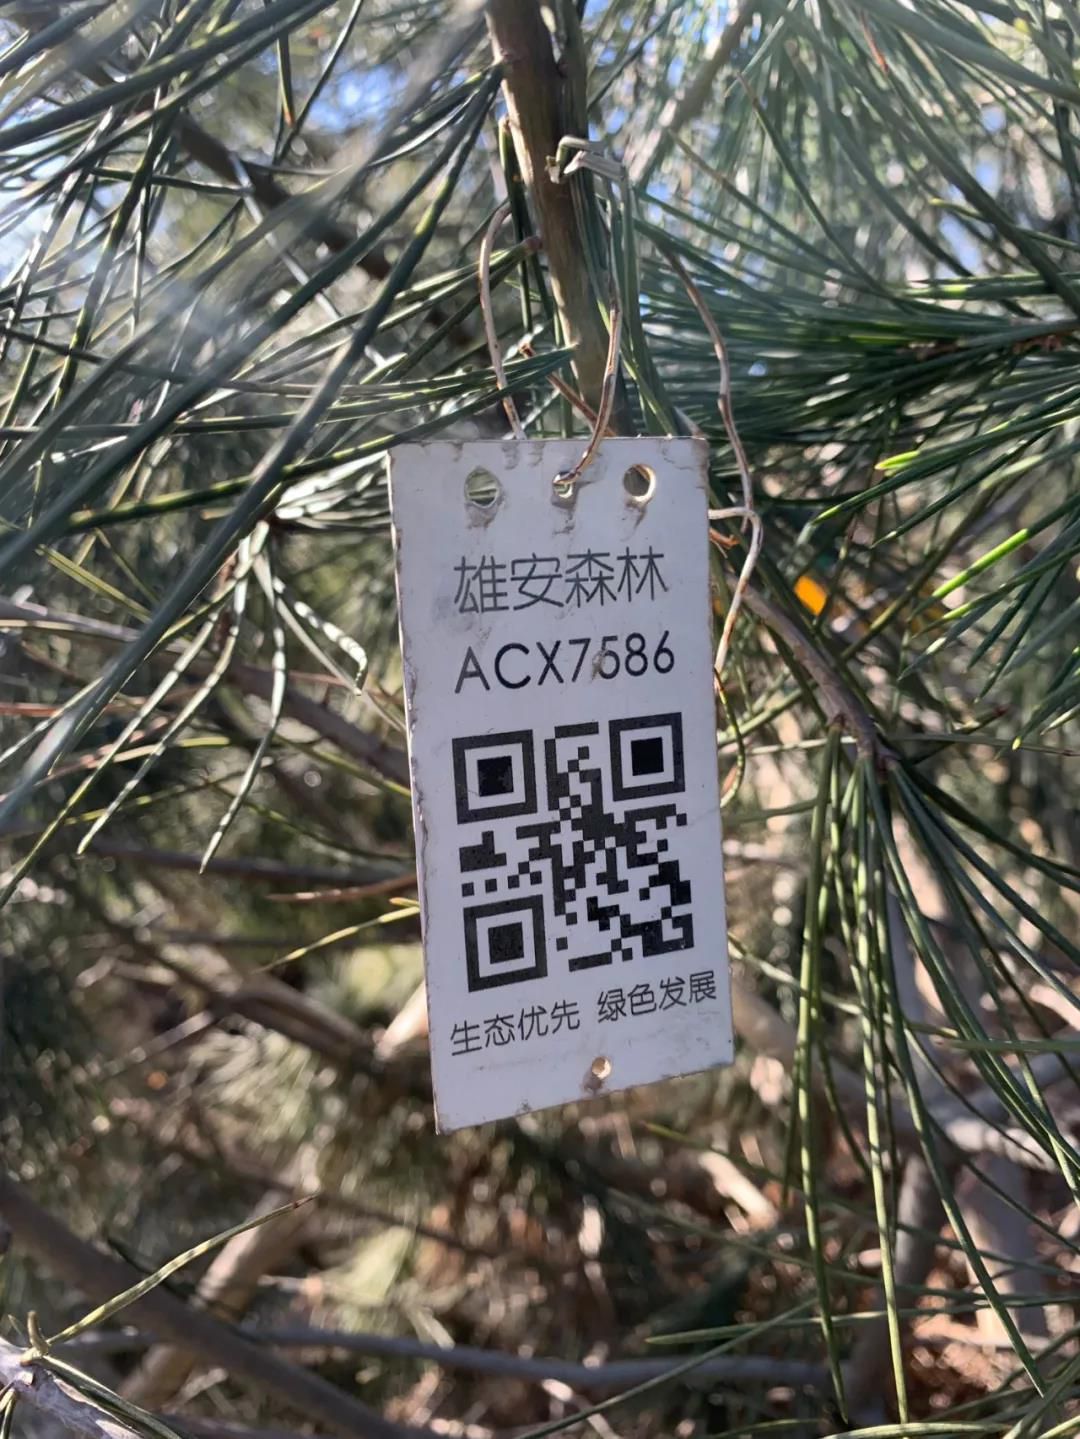 △雄安新区内树木上有二维码，它是树的身份证。(央视记者张淳拍摄)